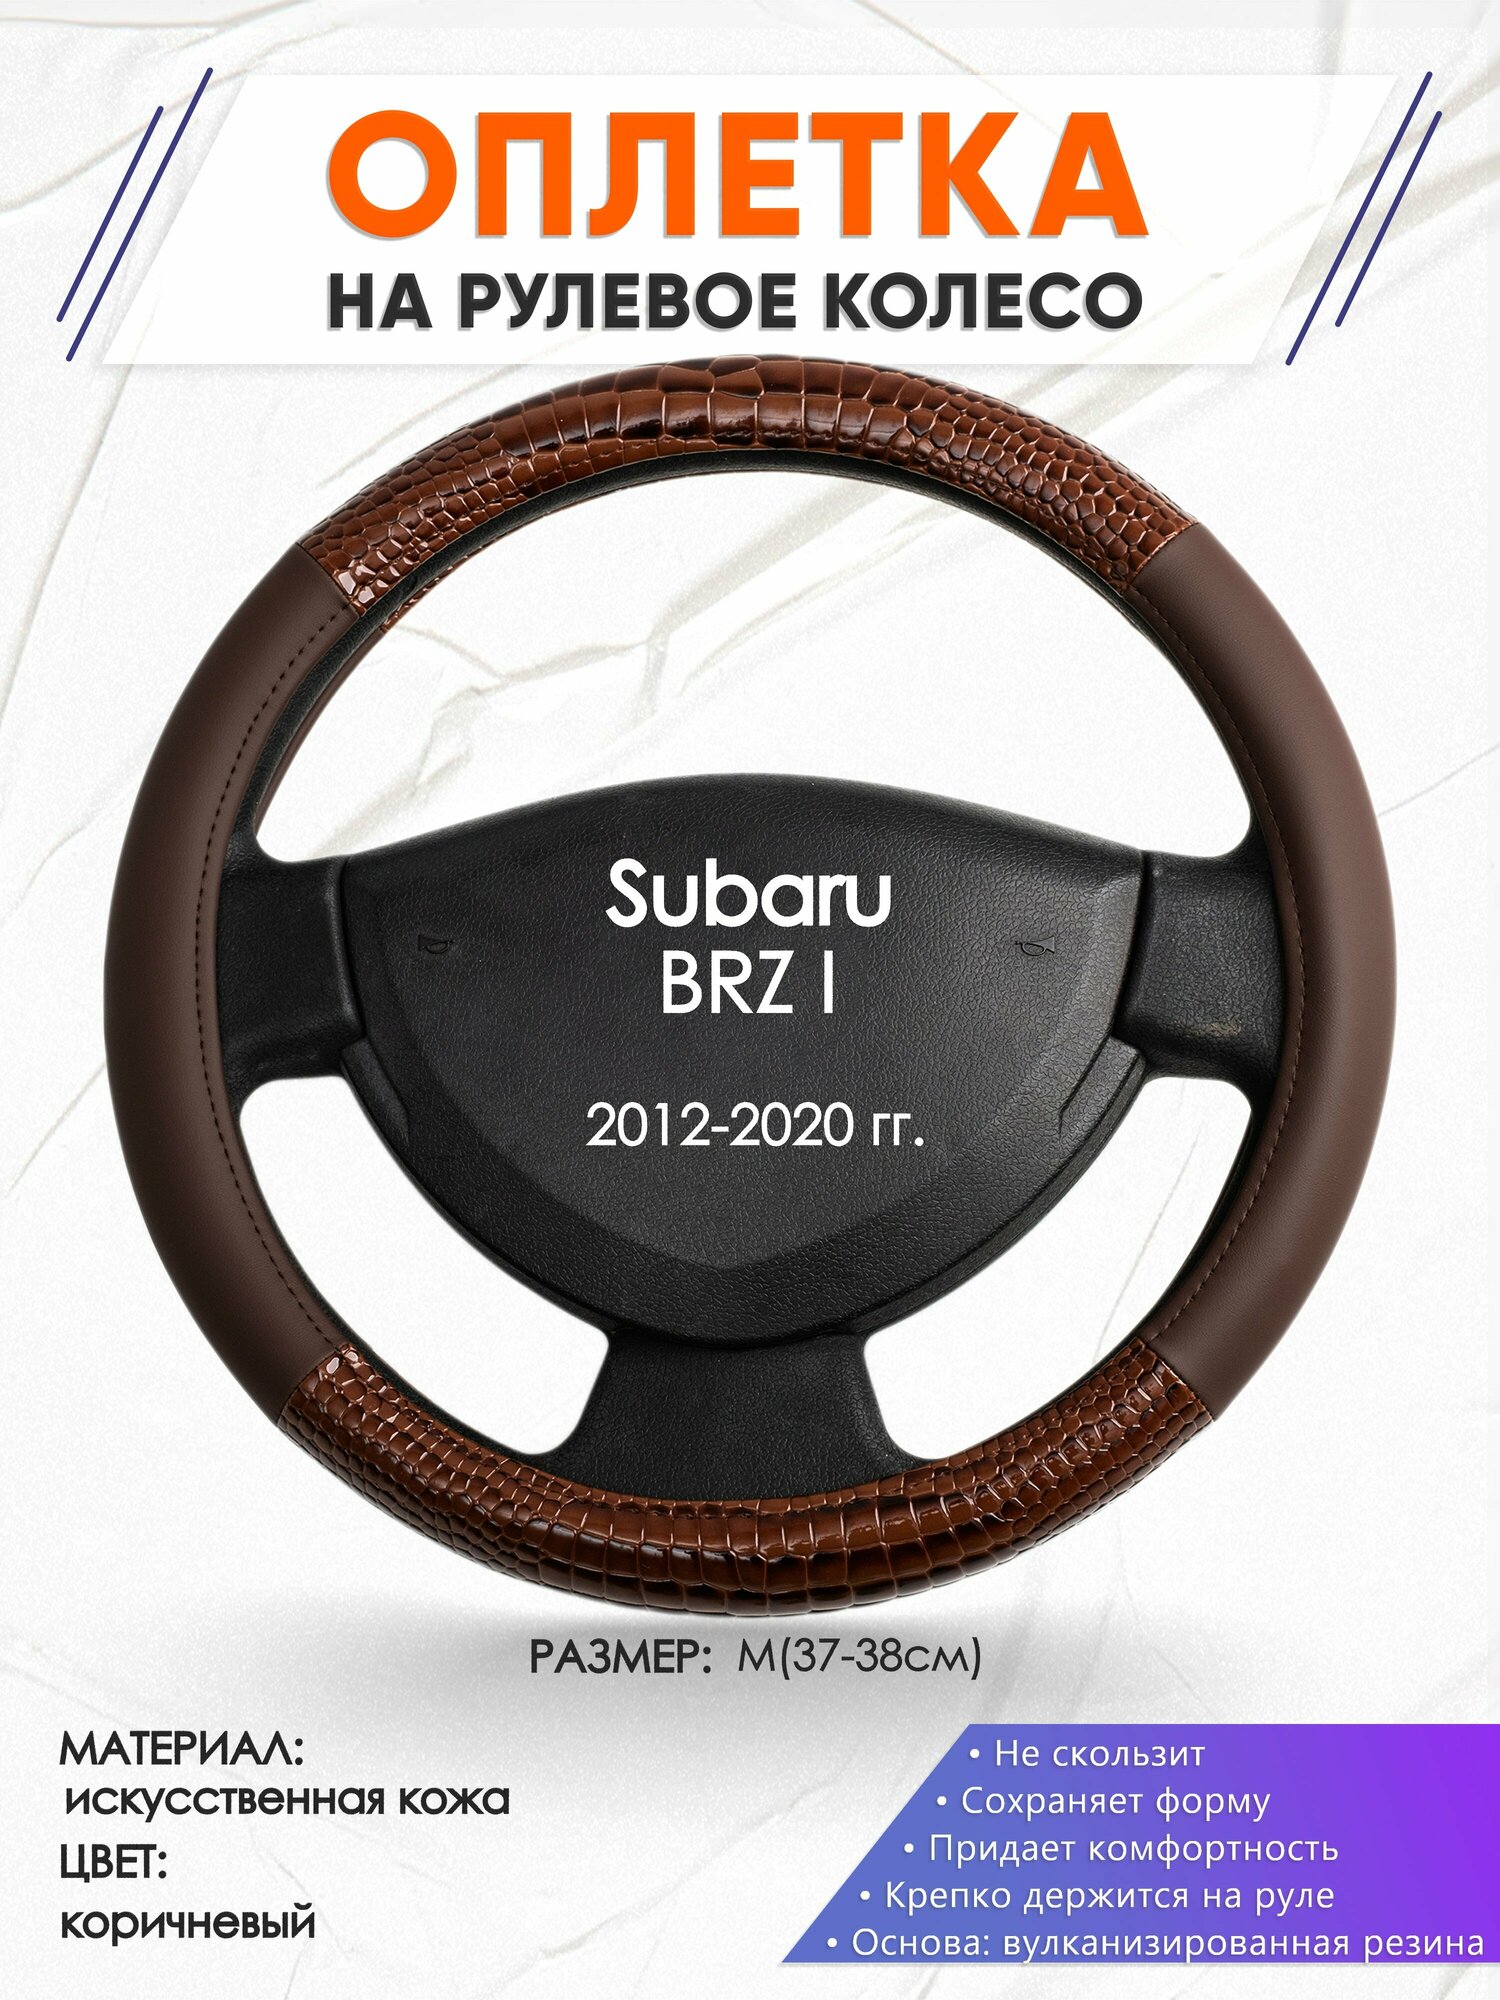 Оплетка наруль для Subaru BRZ 1(Субару ) 2012-2020 годов выпуска, размер M(37-38см), Искусственная кожа 85